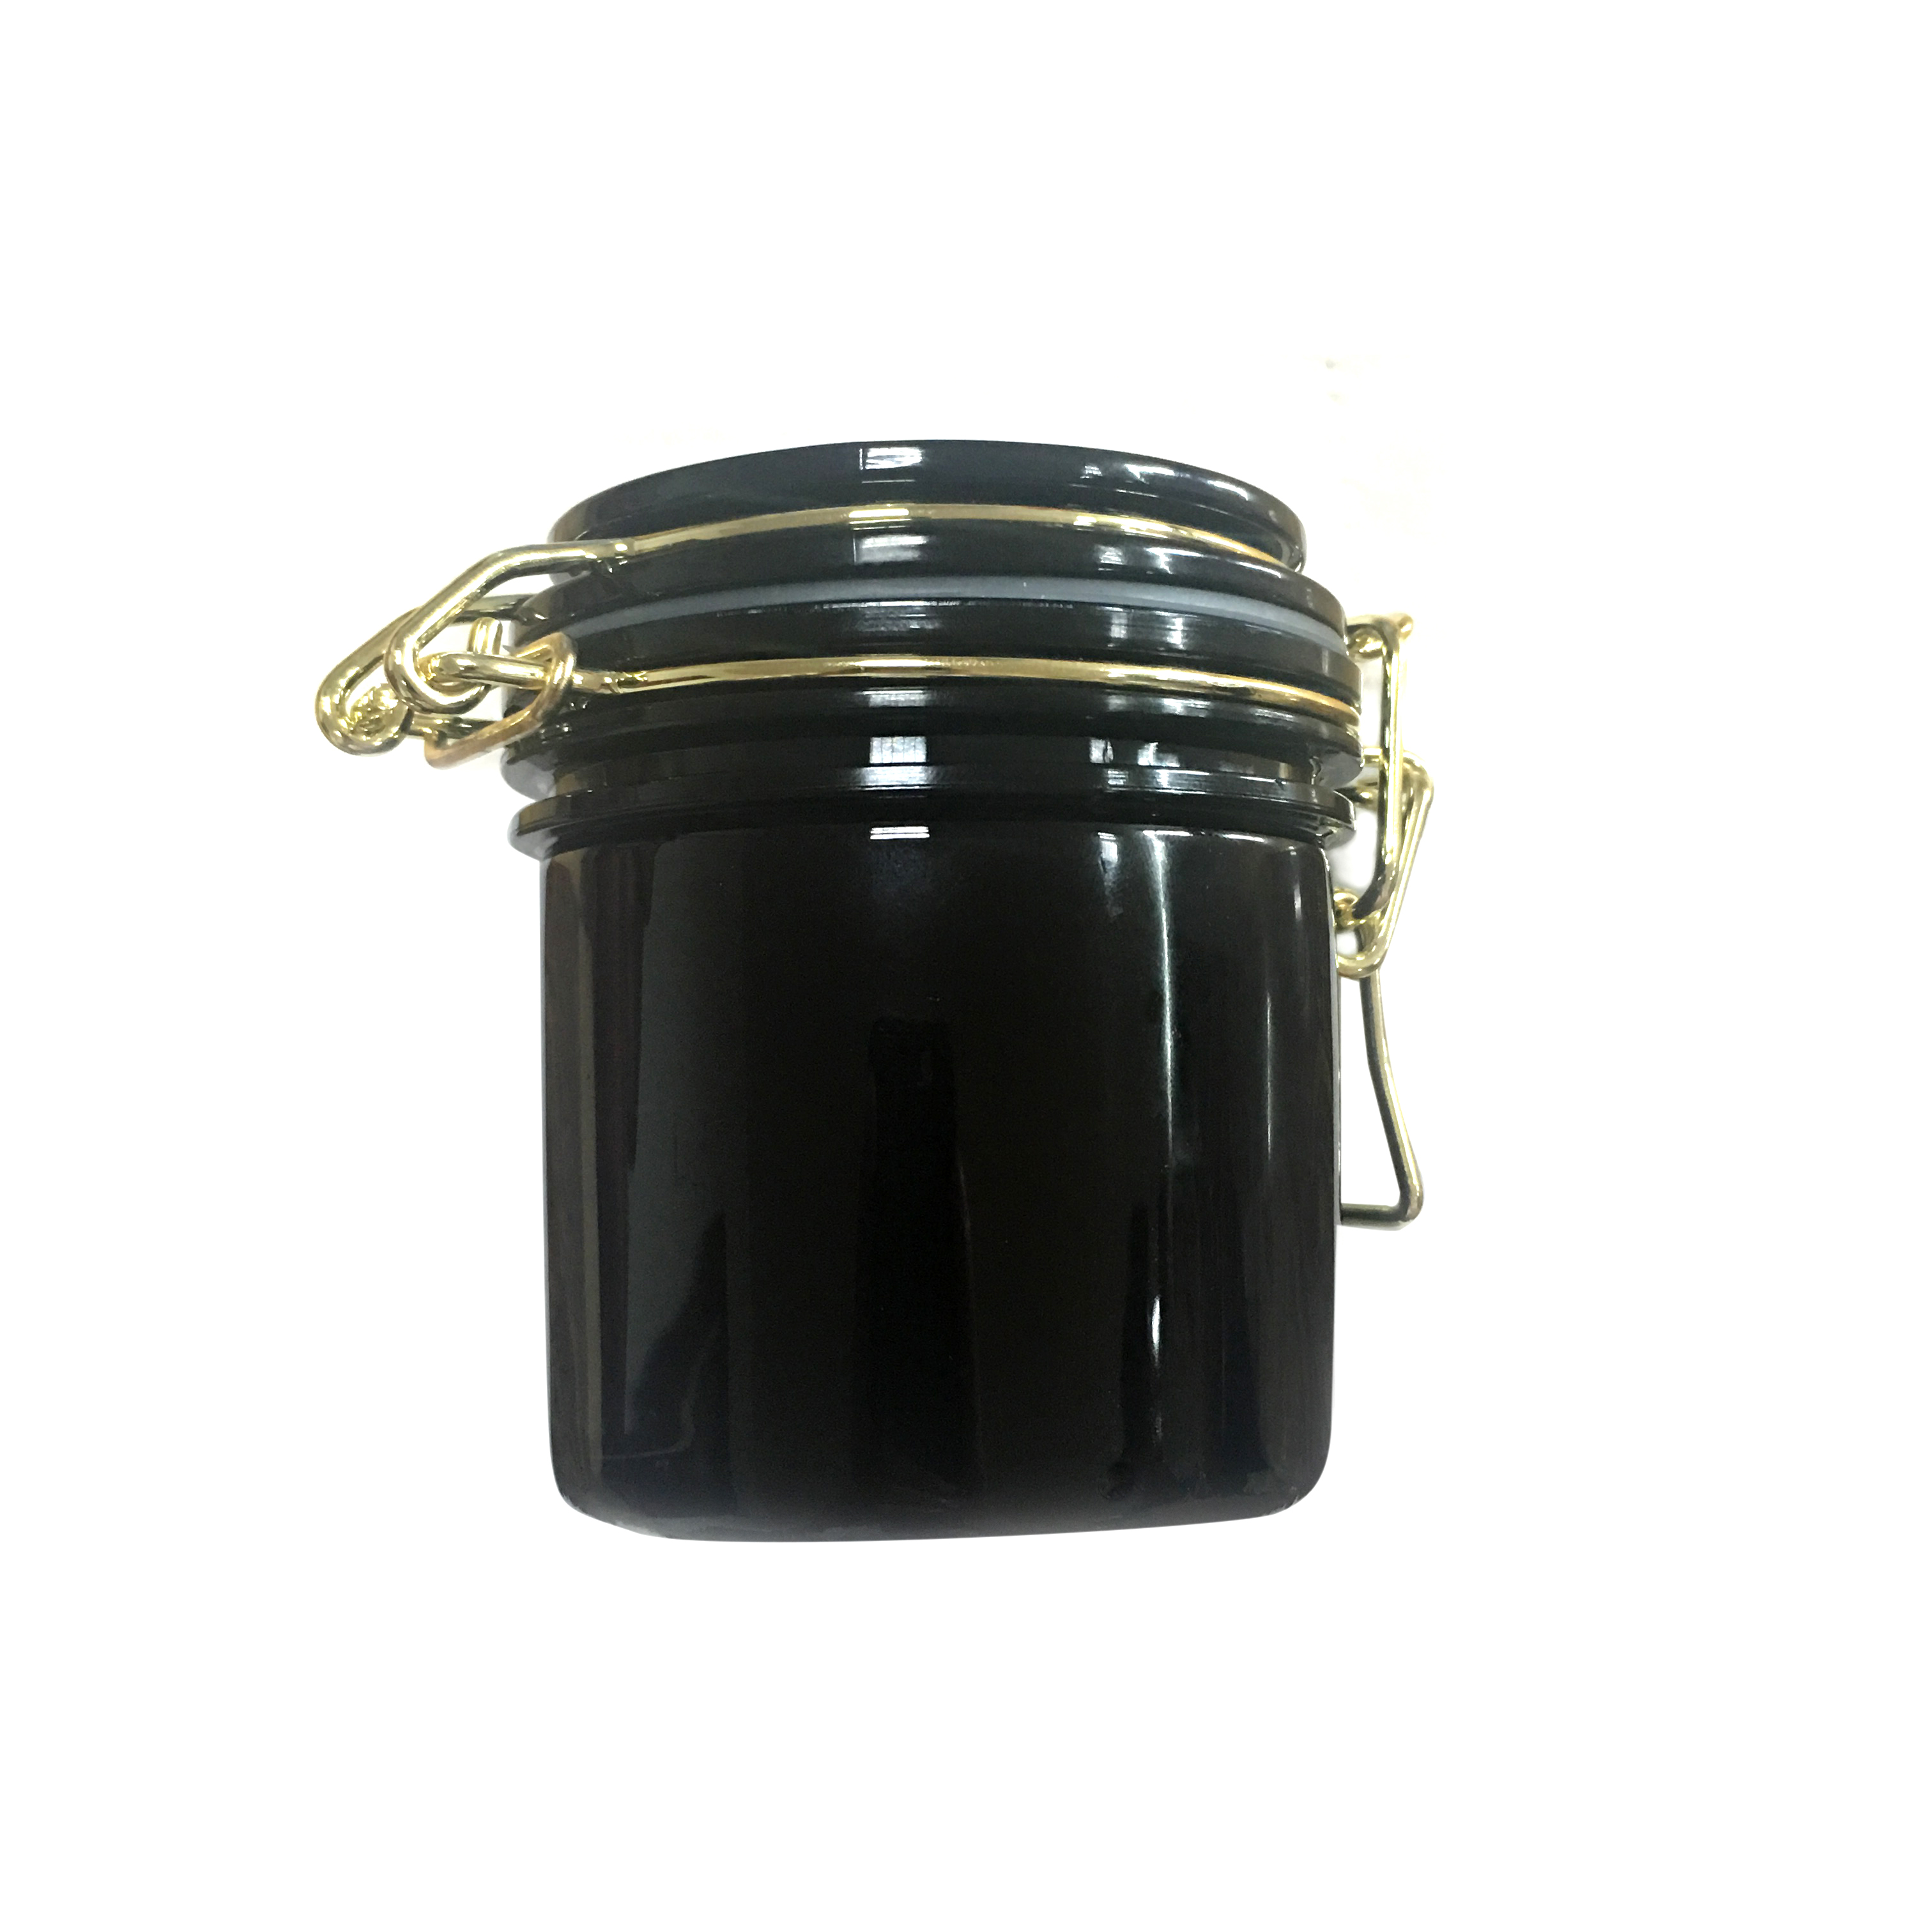 Опарник консервной упаковки маски еды черного ЛЮБИМЦА пластиковый косметический с проводом металла золота